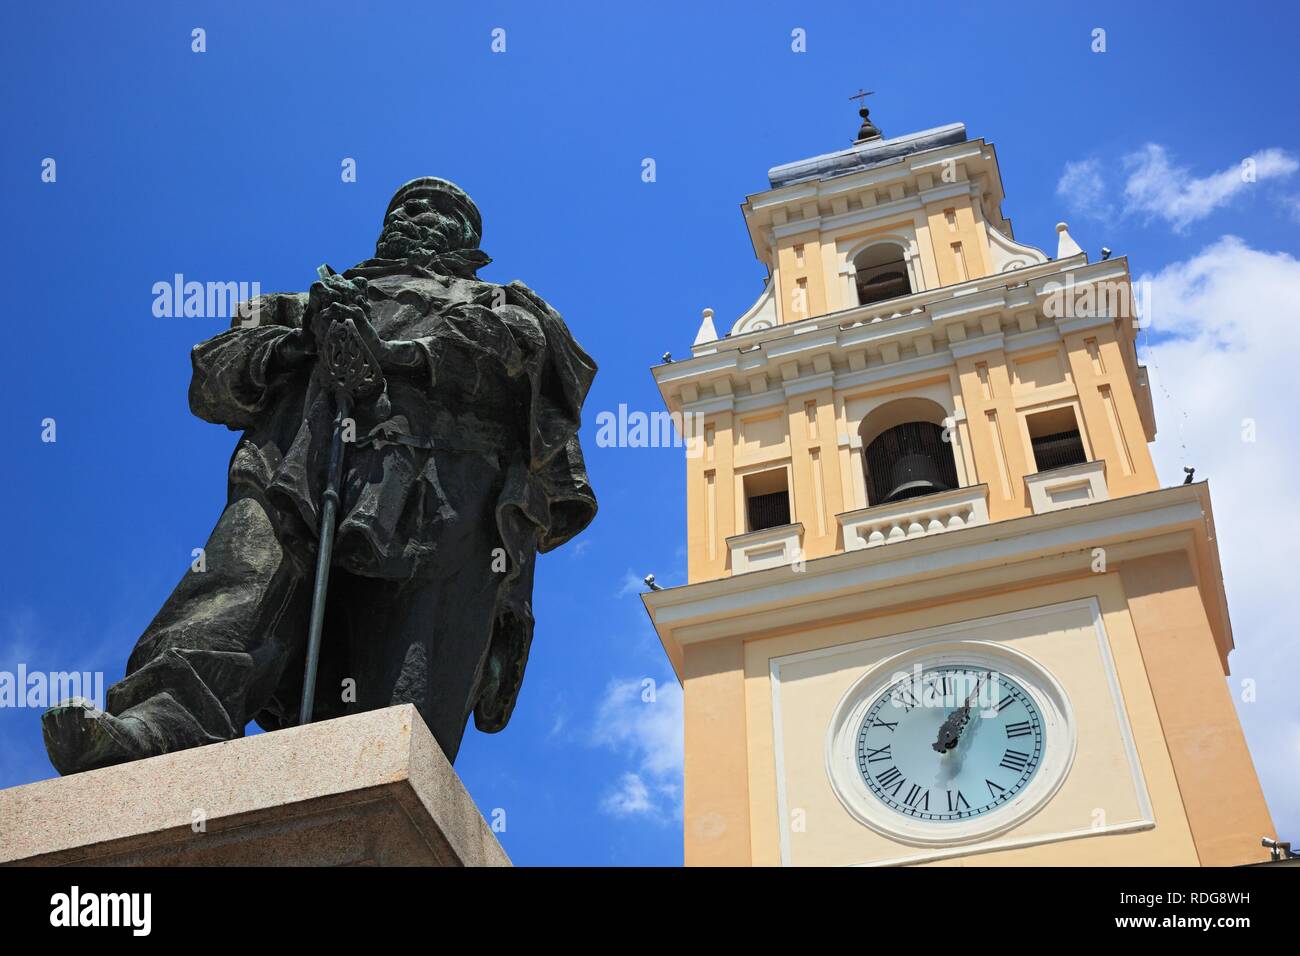 Garibaldi statue in front of the Palazzo del Governatore, Governor's Palace, on Piazza Garibaldi square, Parma, Emilia Romagna Stock Photo